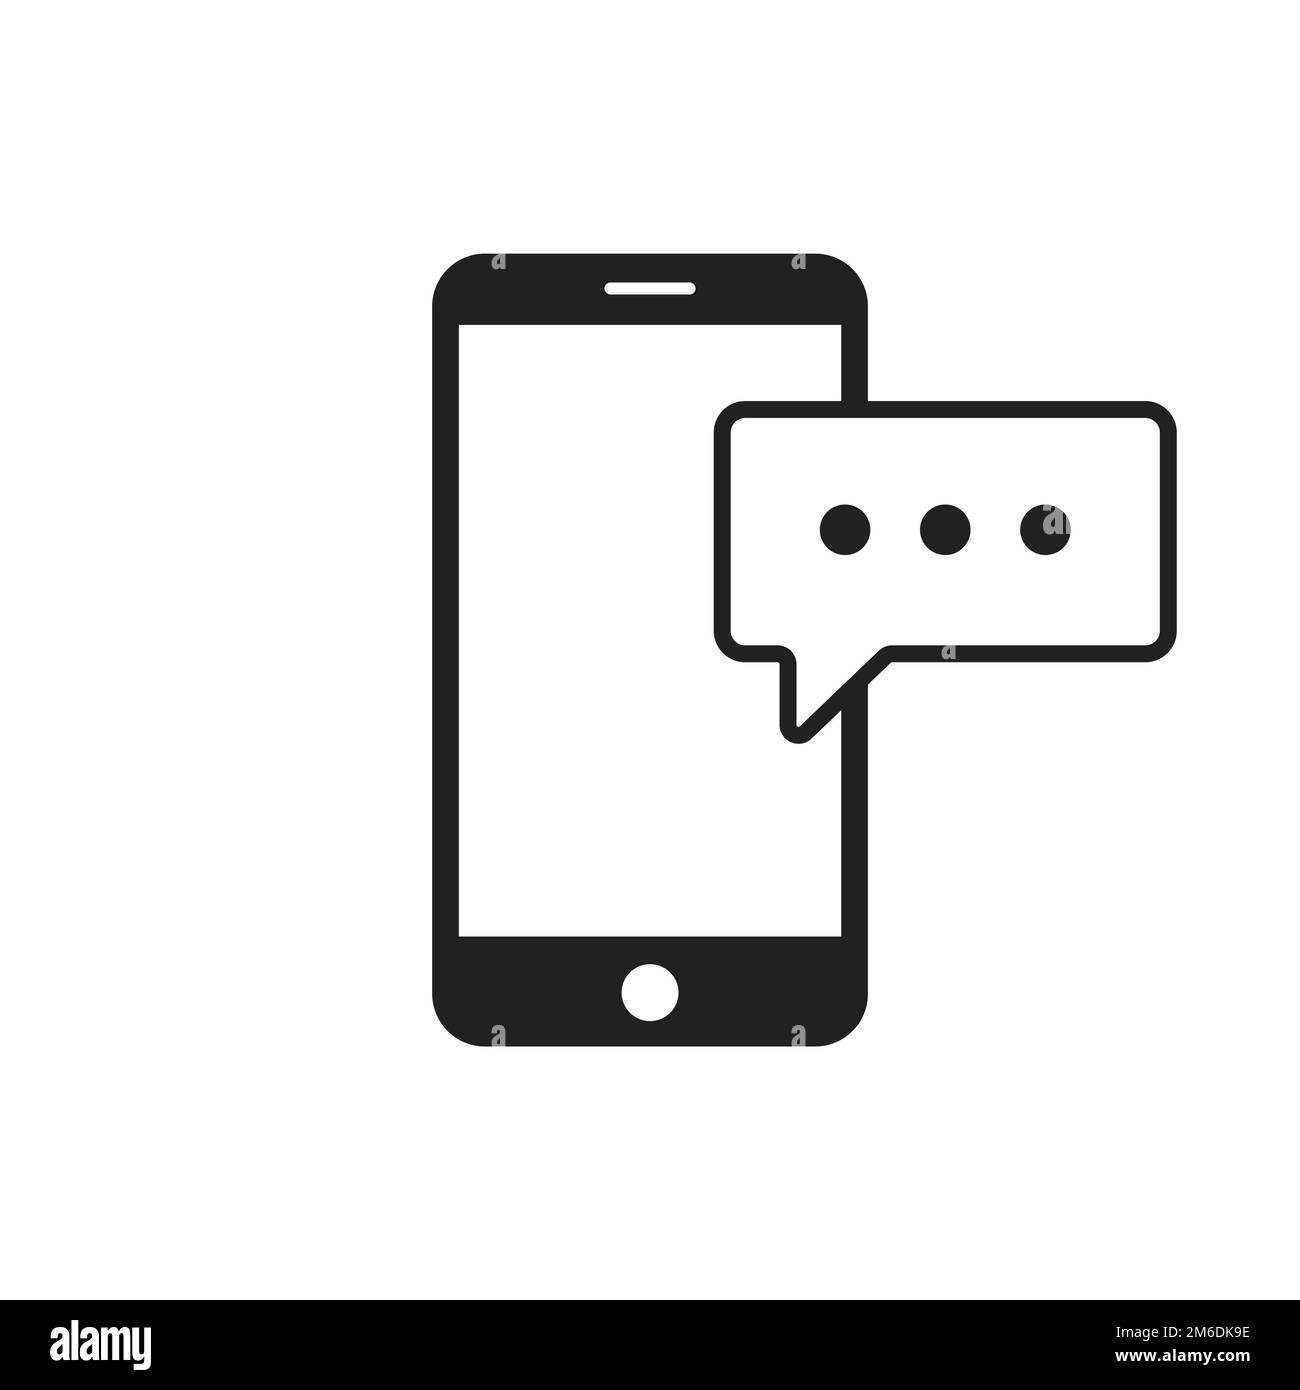 Sms icon text message symbol Banque d'images noir et blanc - Alamy